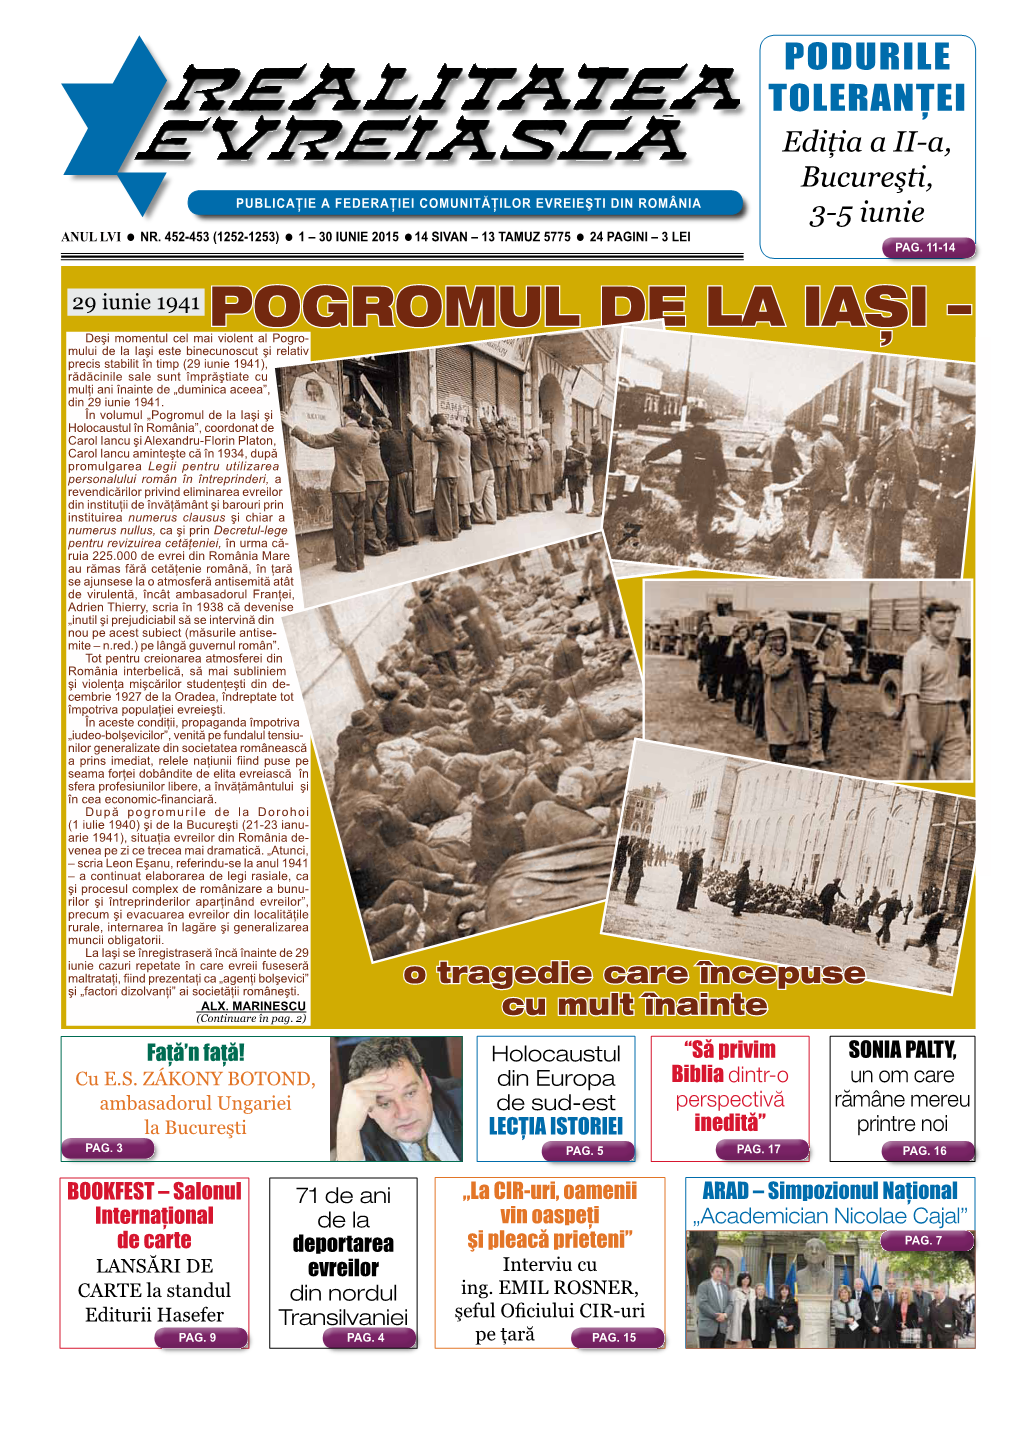 29 Iunie 1941 Pogromul De La Iaªi –